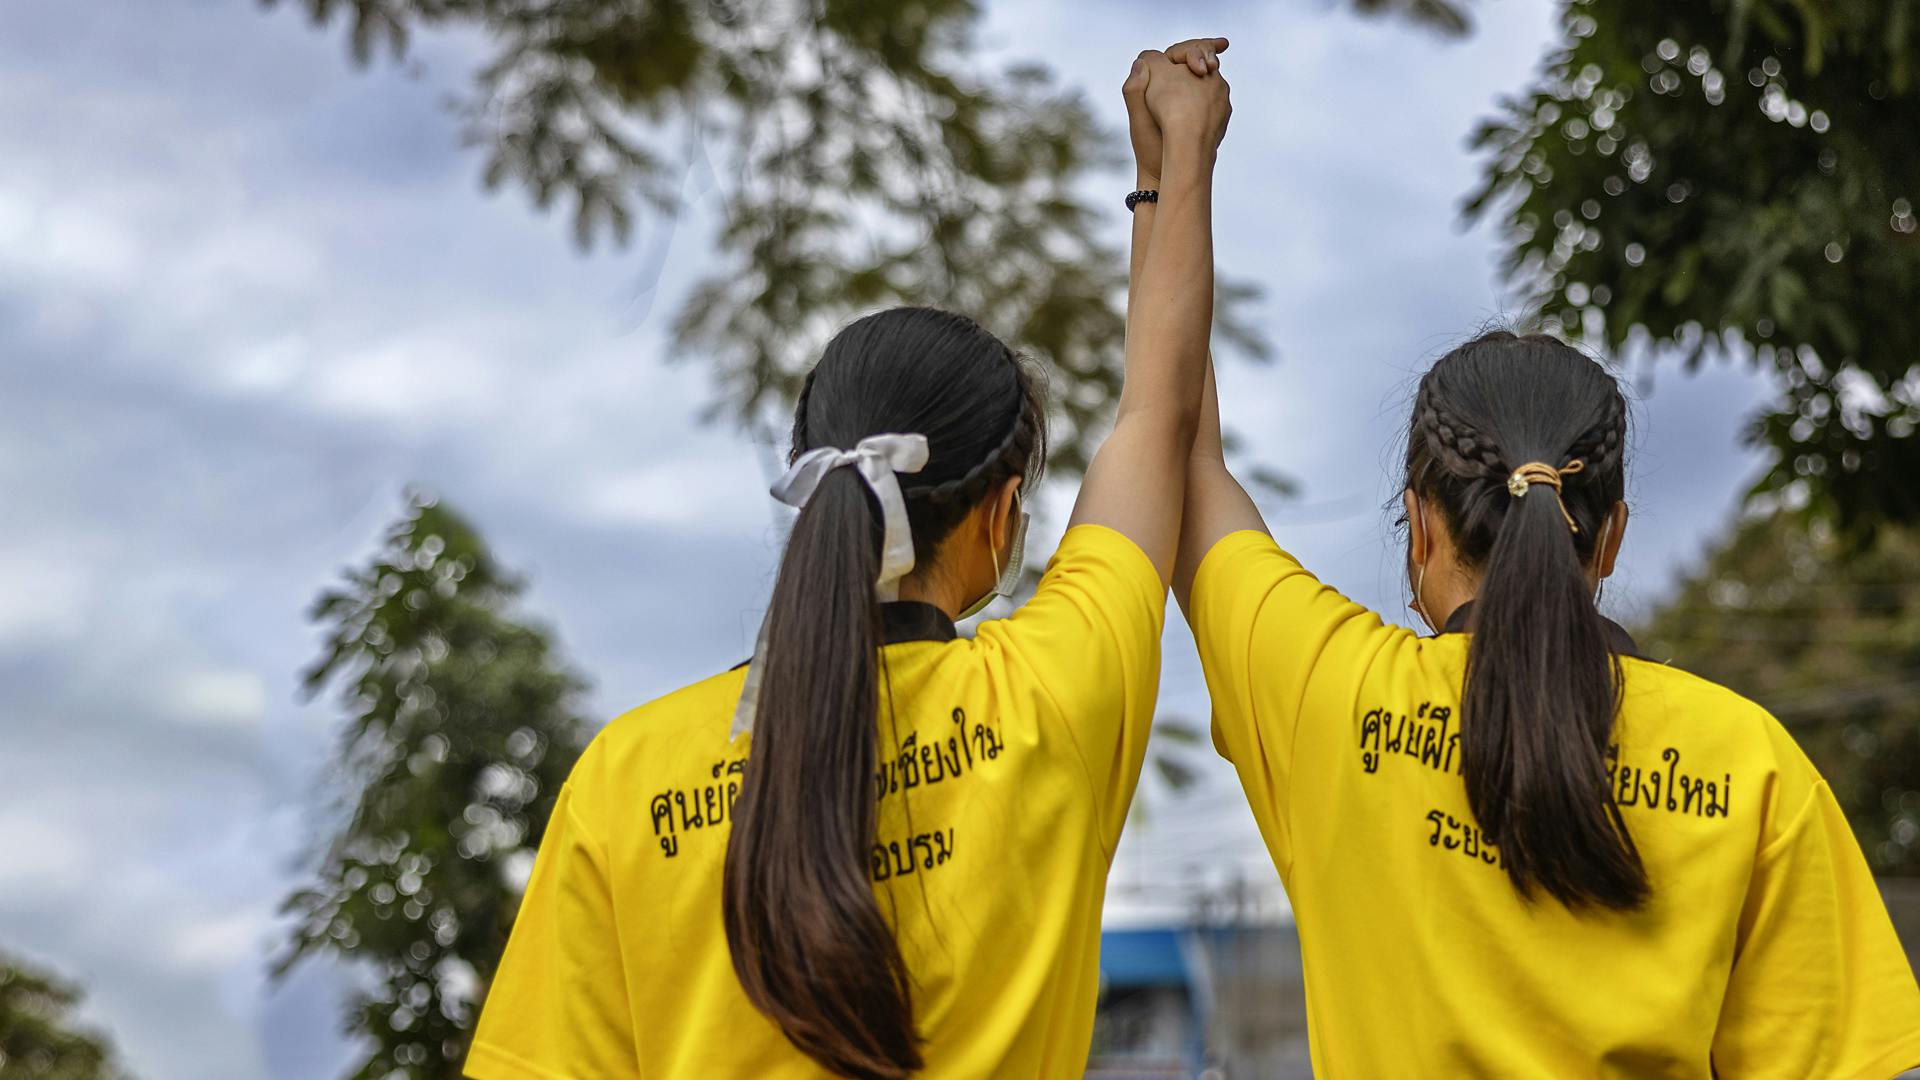 Två unga kvinnor med likadana gula tröjor står med ryggarna mot kameran och håller sina händer upp mot himlen.